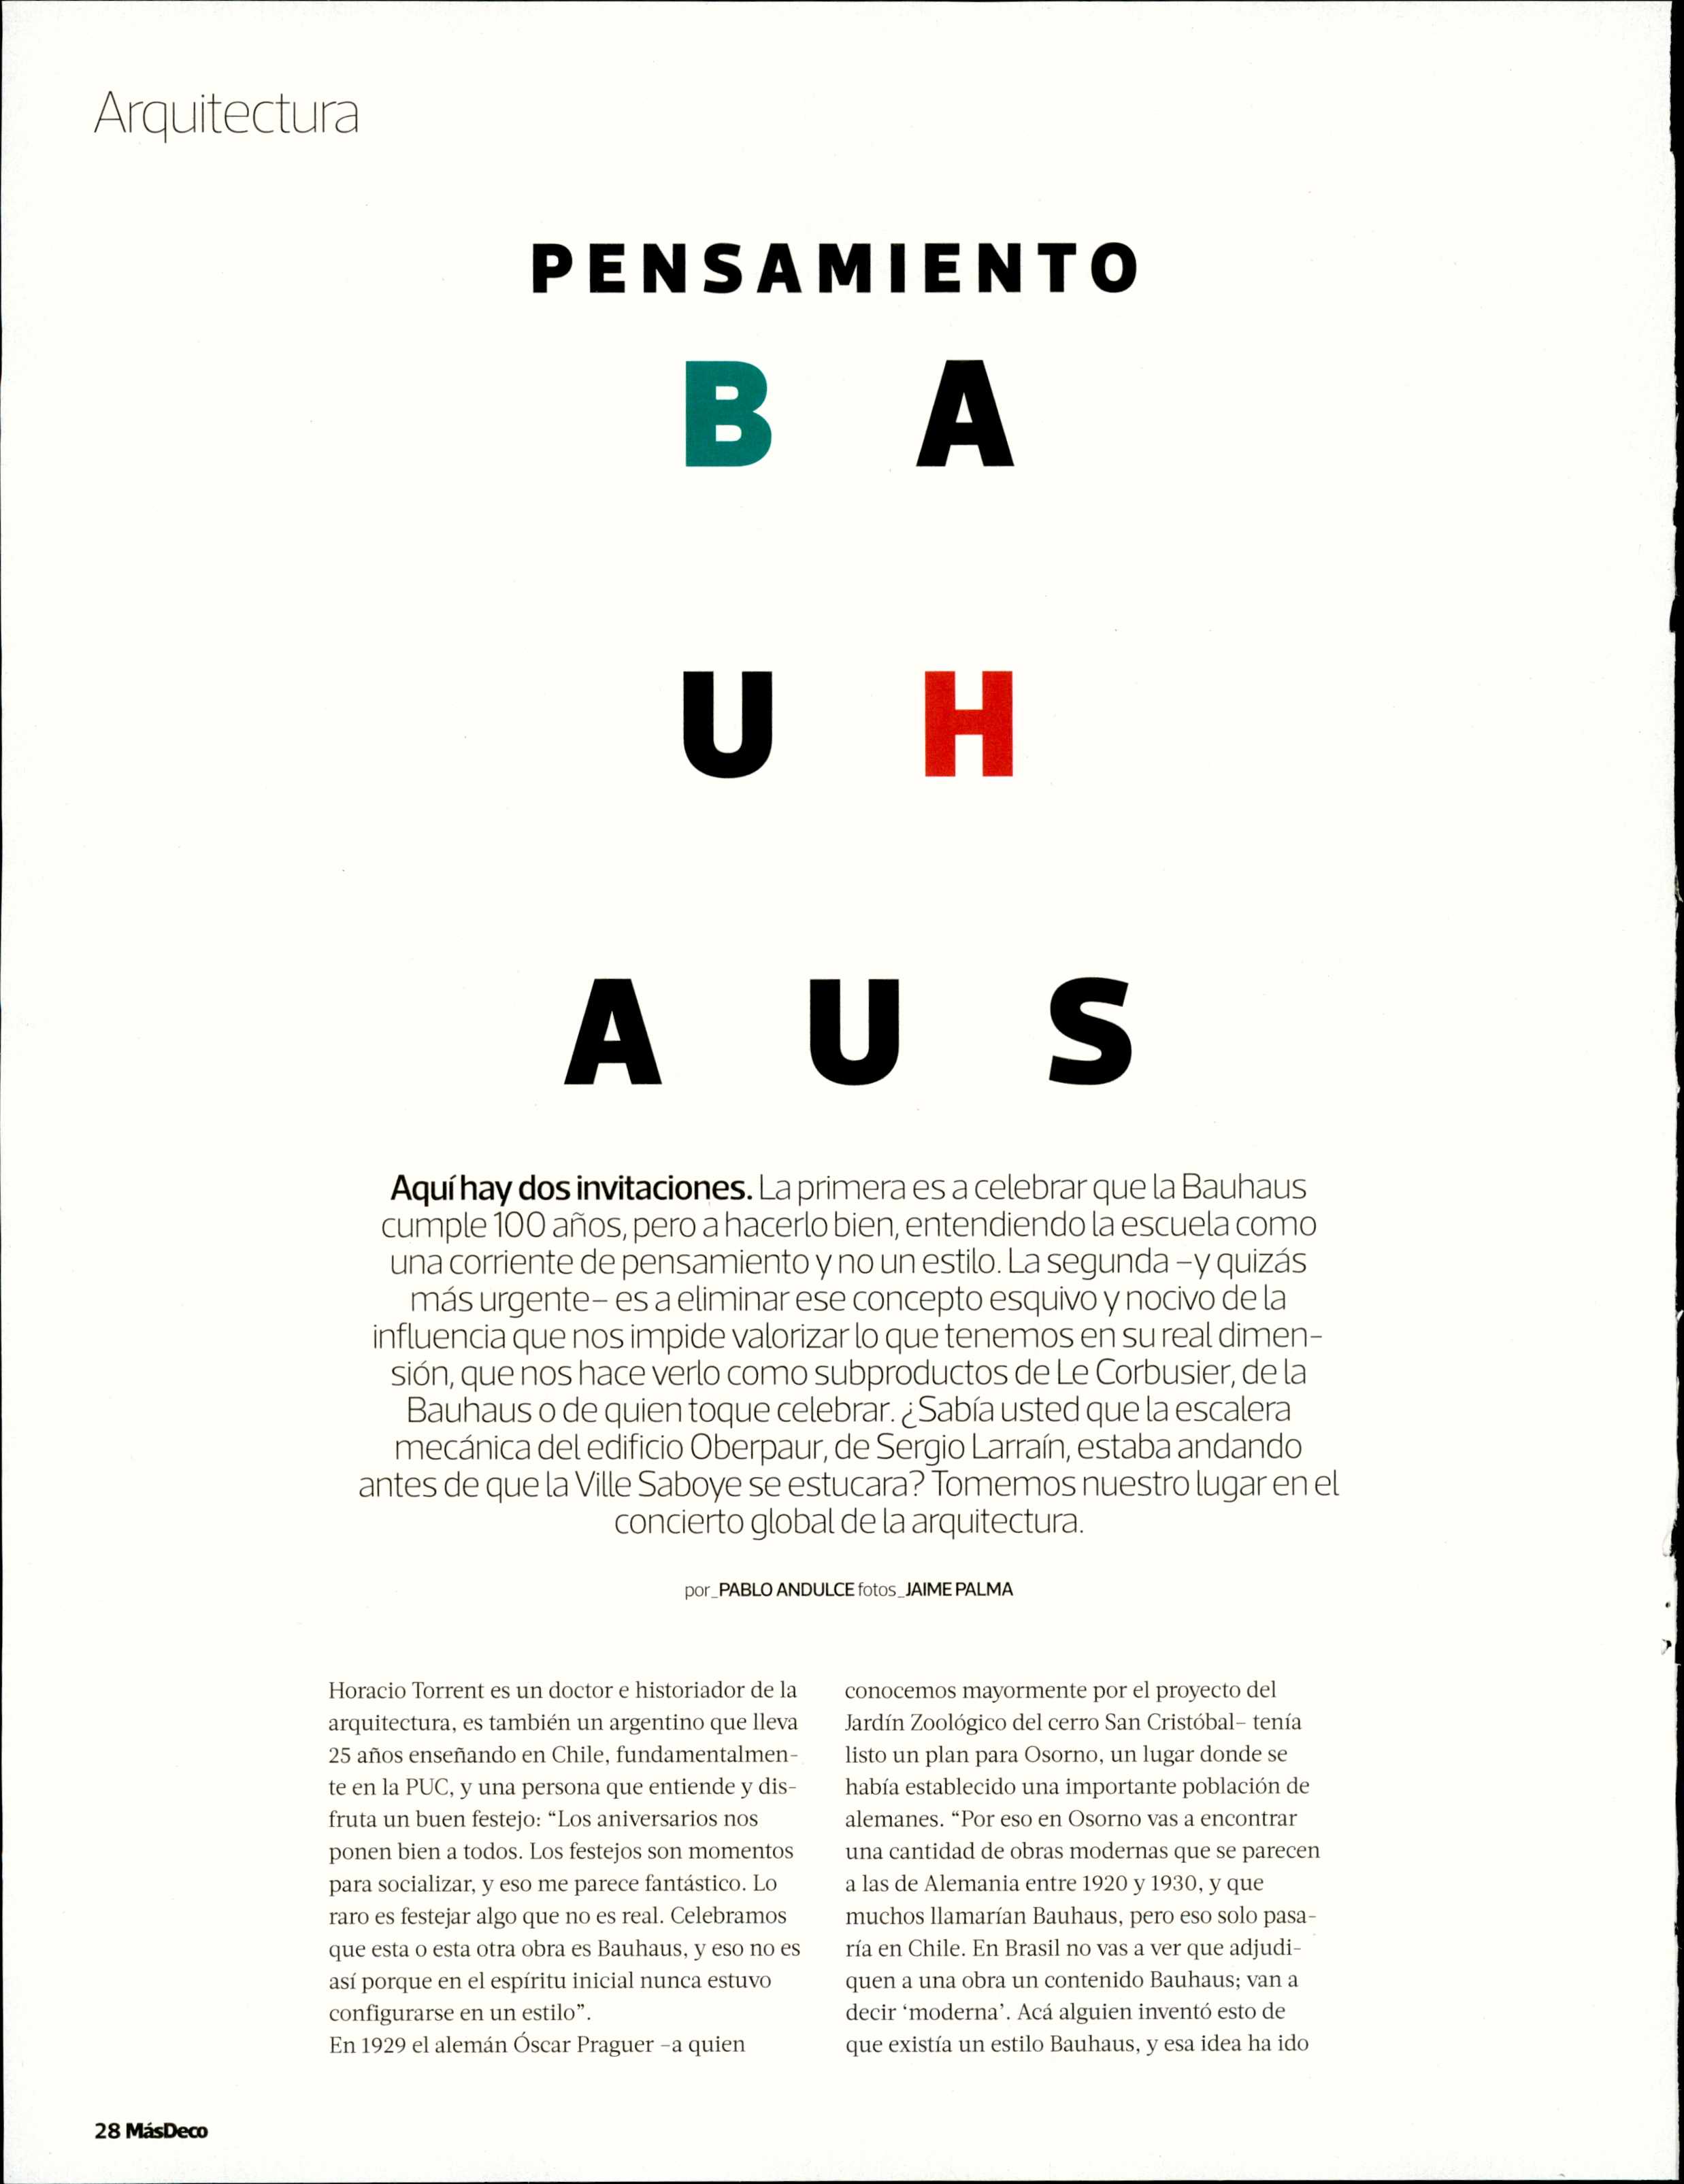 19-04-27_Horacio_Torrent_habla_sobre_La_Bauhaus_en_revista_MasDeco.JPG